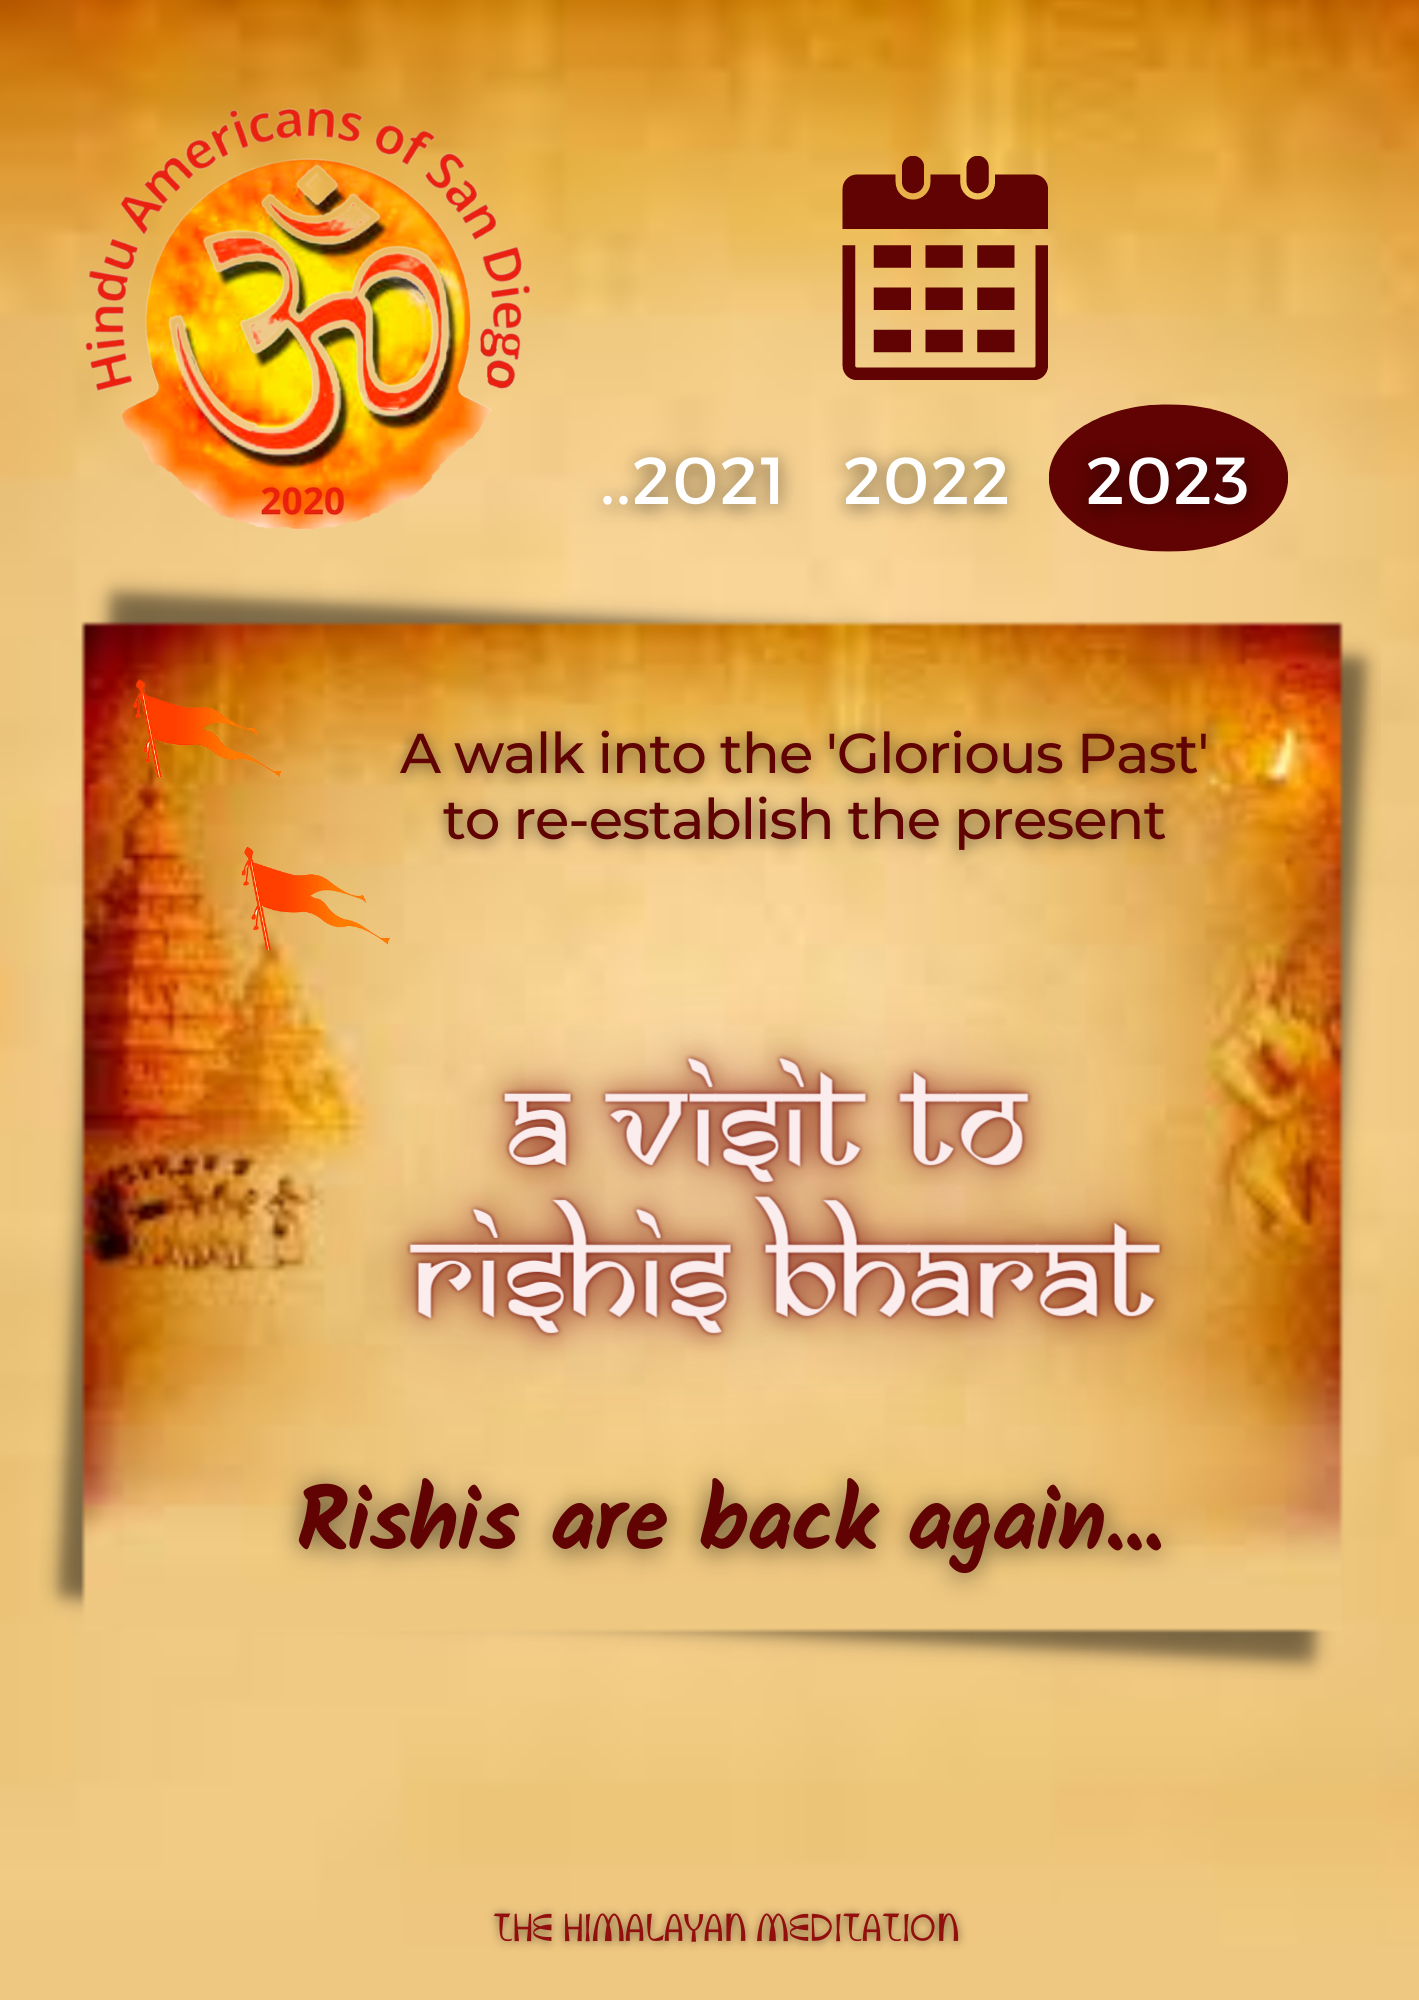 vedic-calendar-2023-the-himalayan-meditation